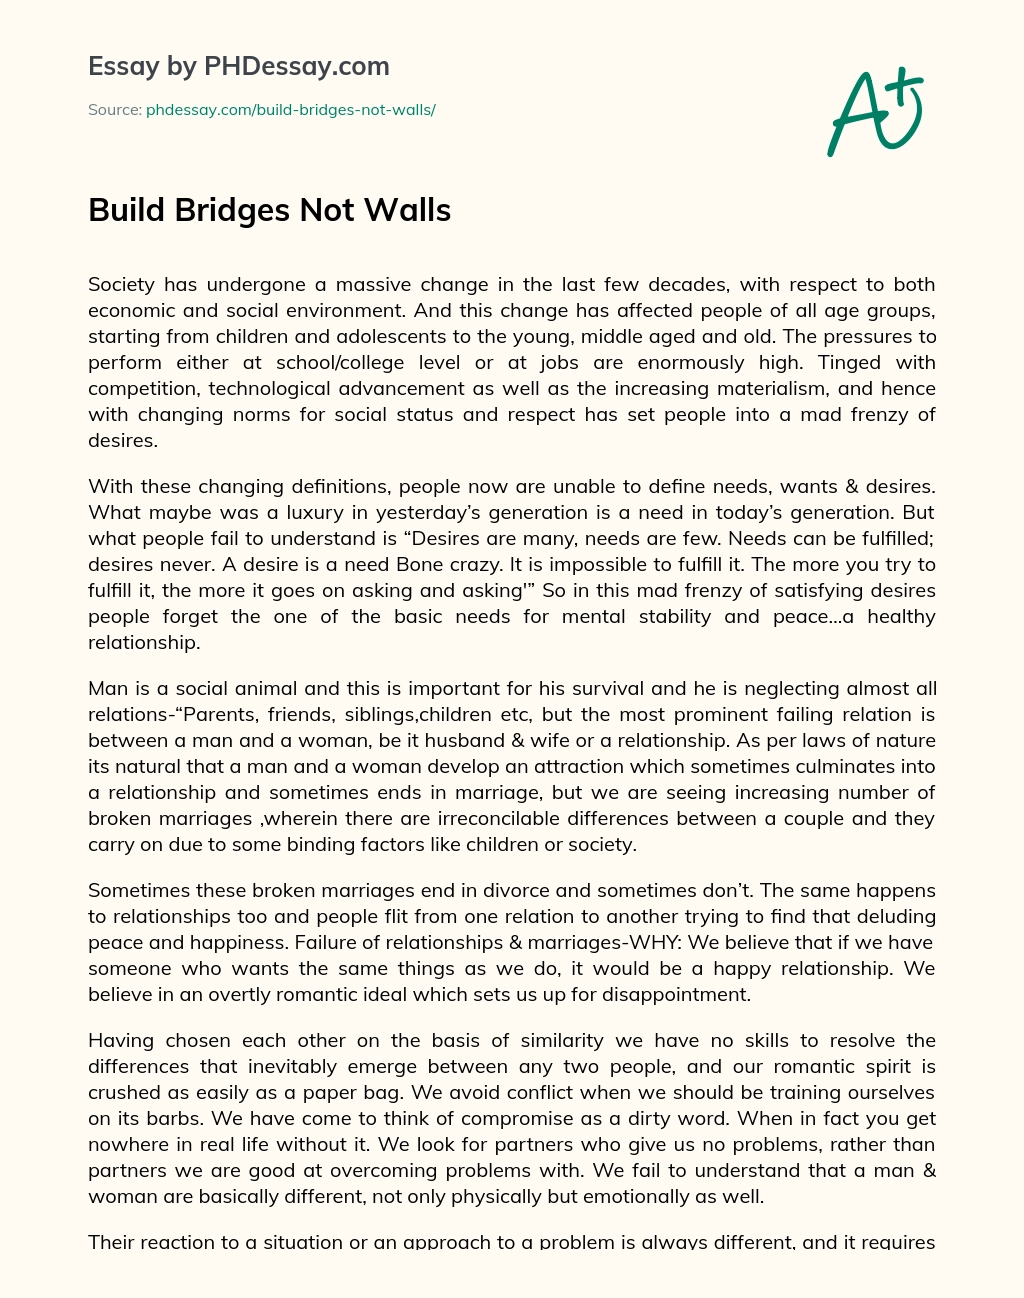 Build Bridges Not Walls essay